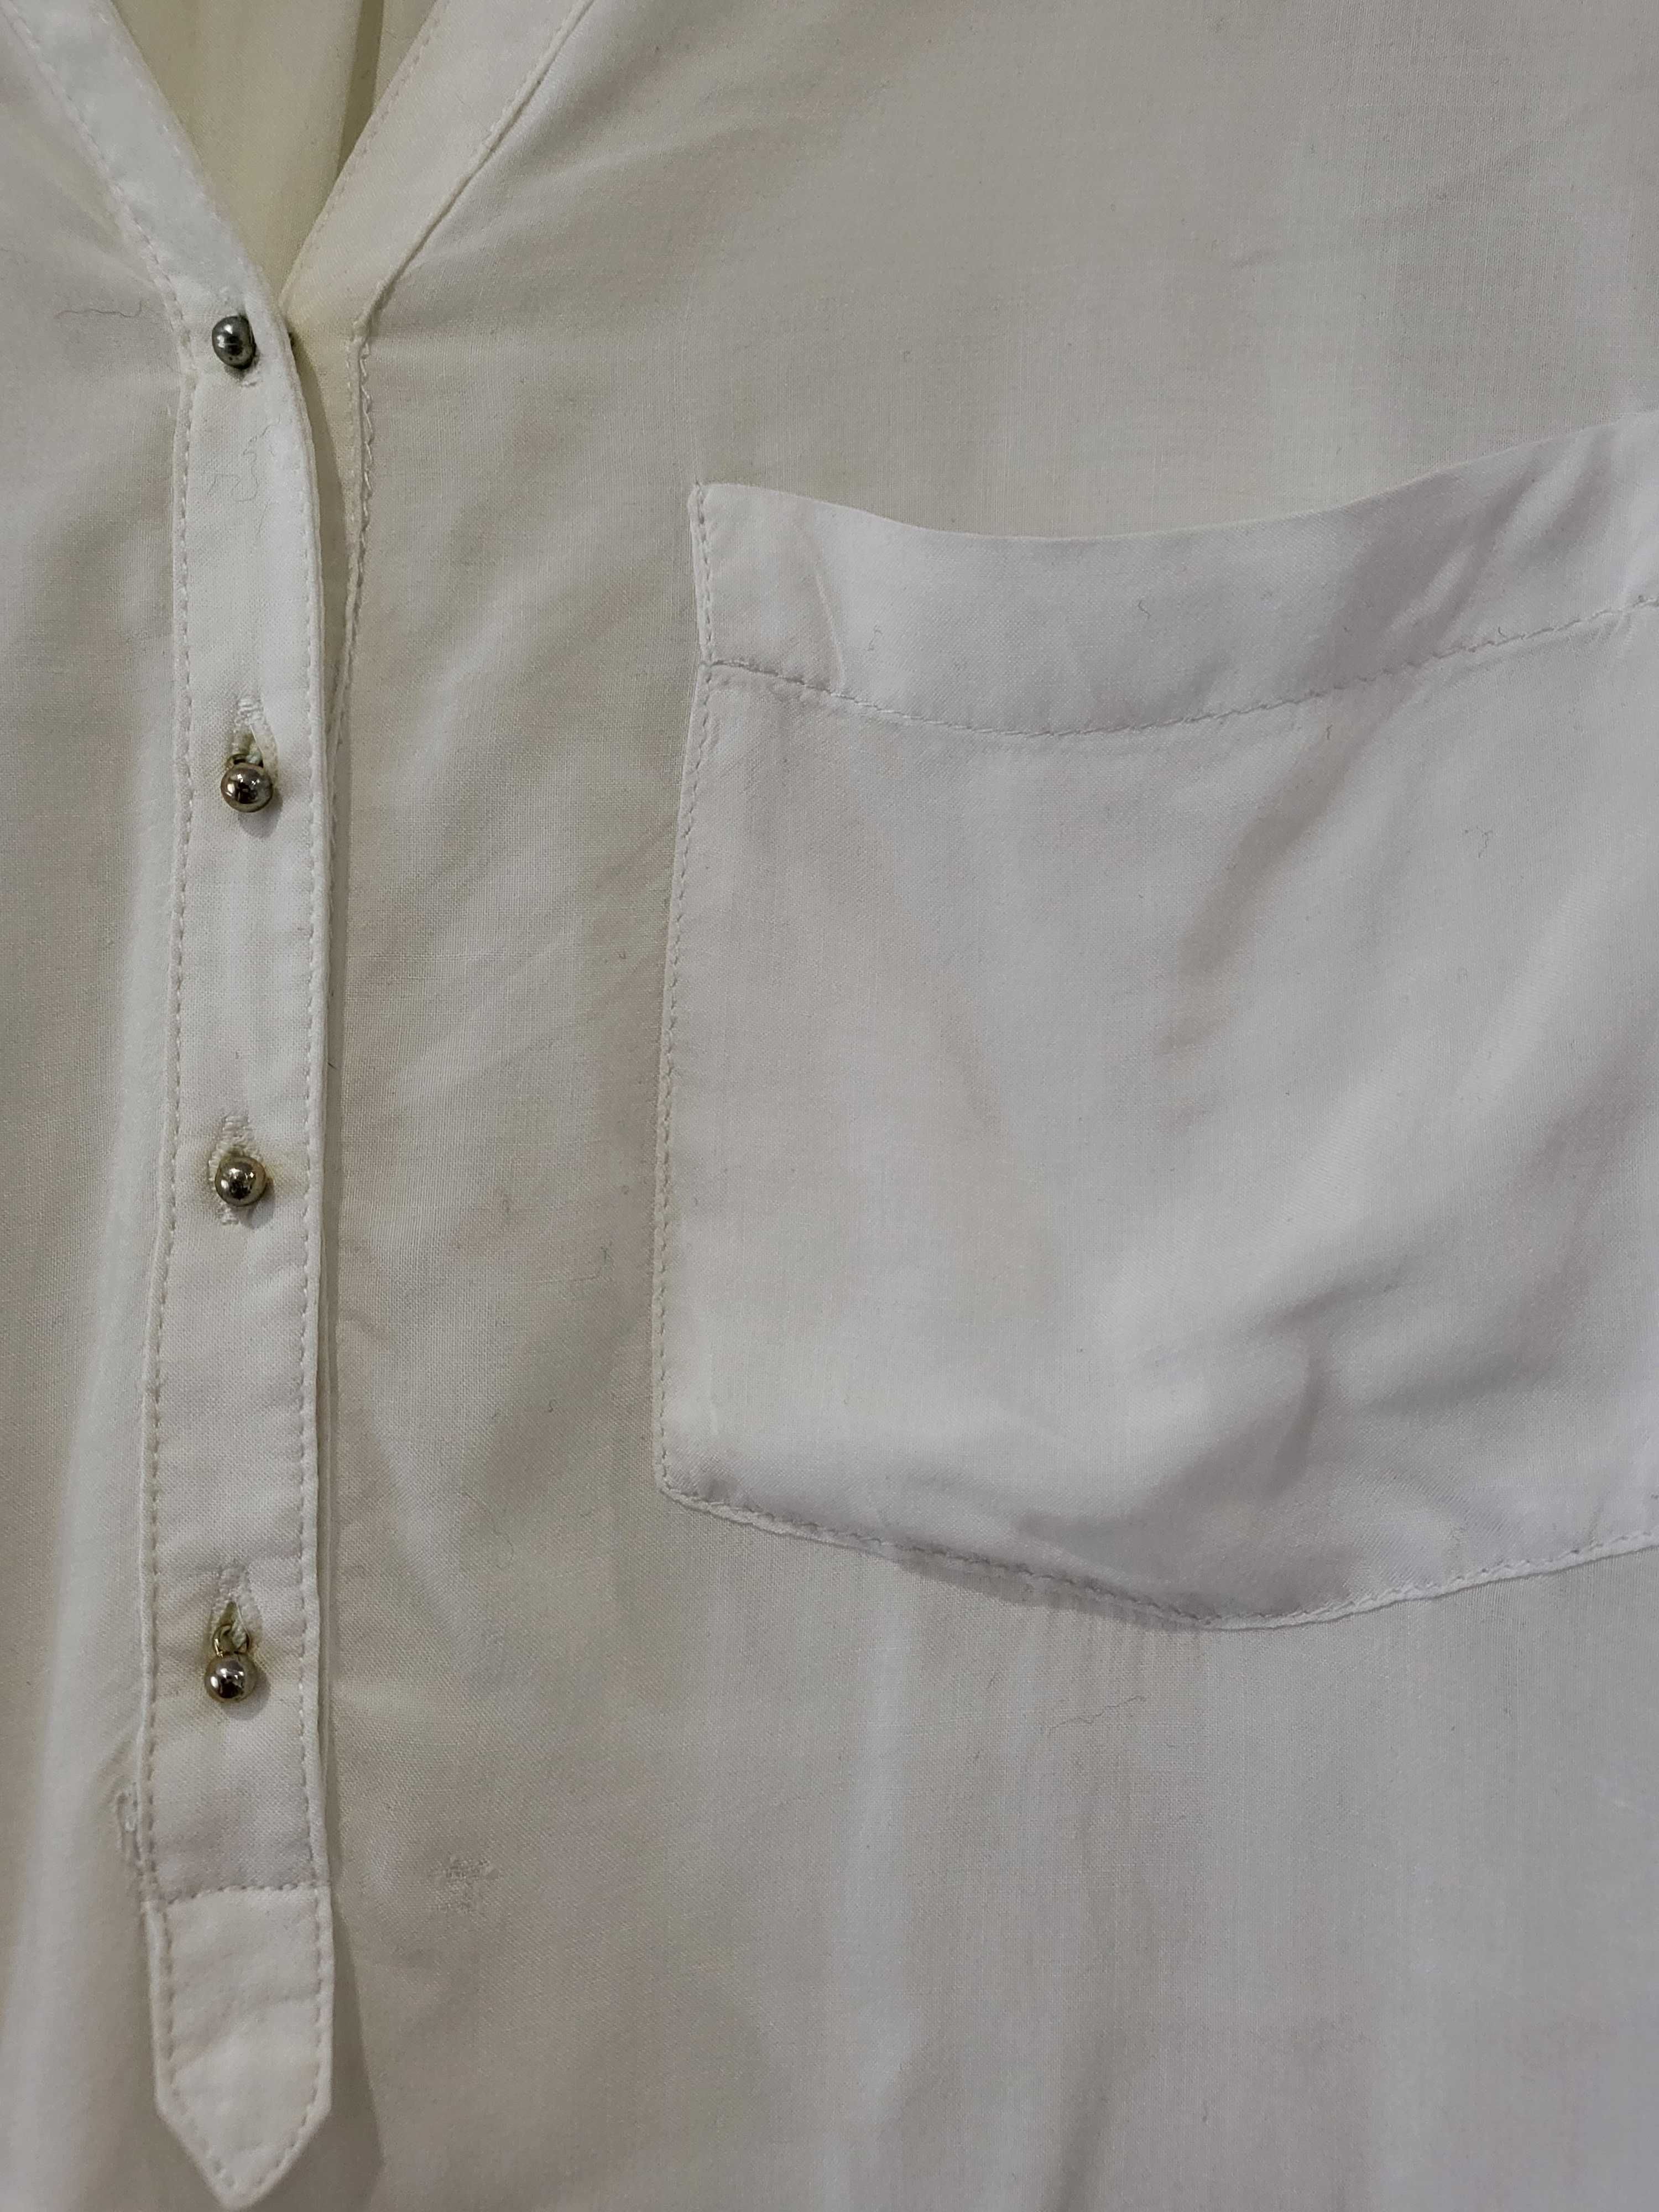 Camisa branca Zara tamanho S